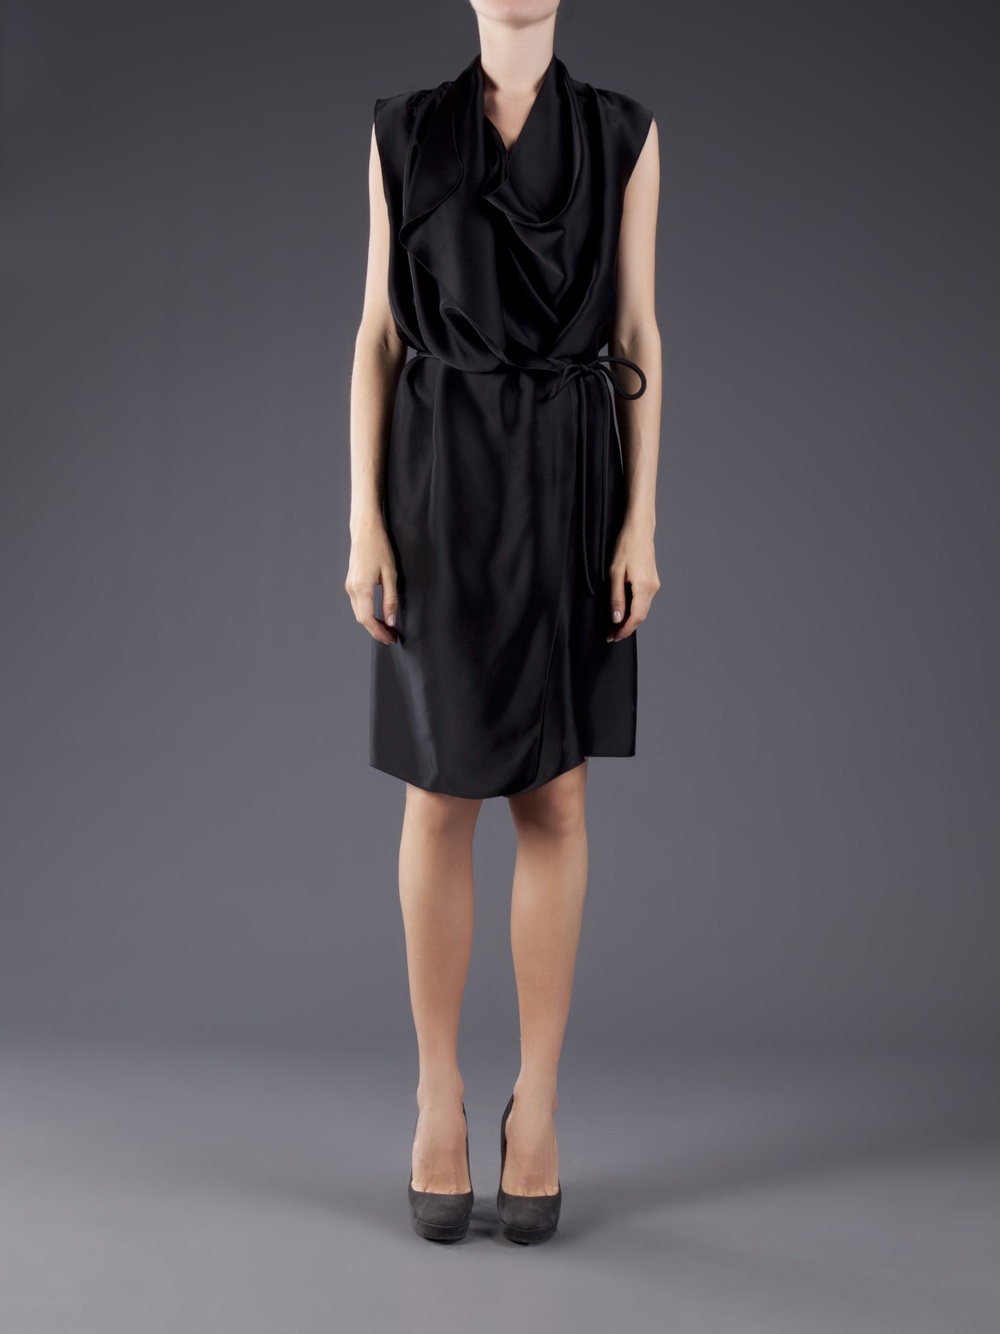 Lyst - Lanvin Sleeveless Wrap Dress in Black